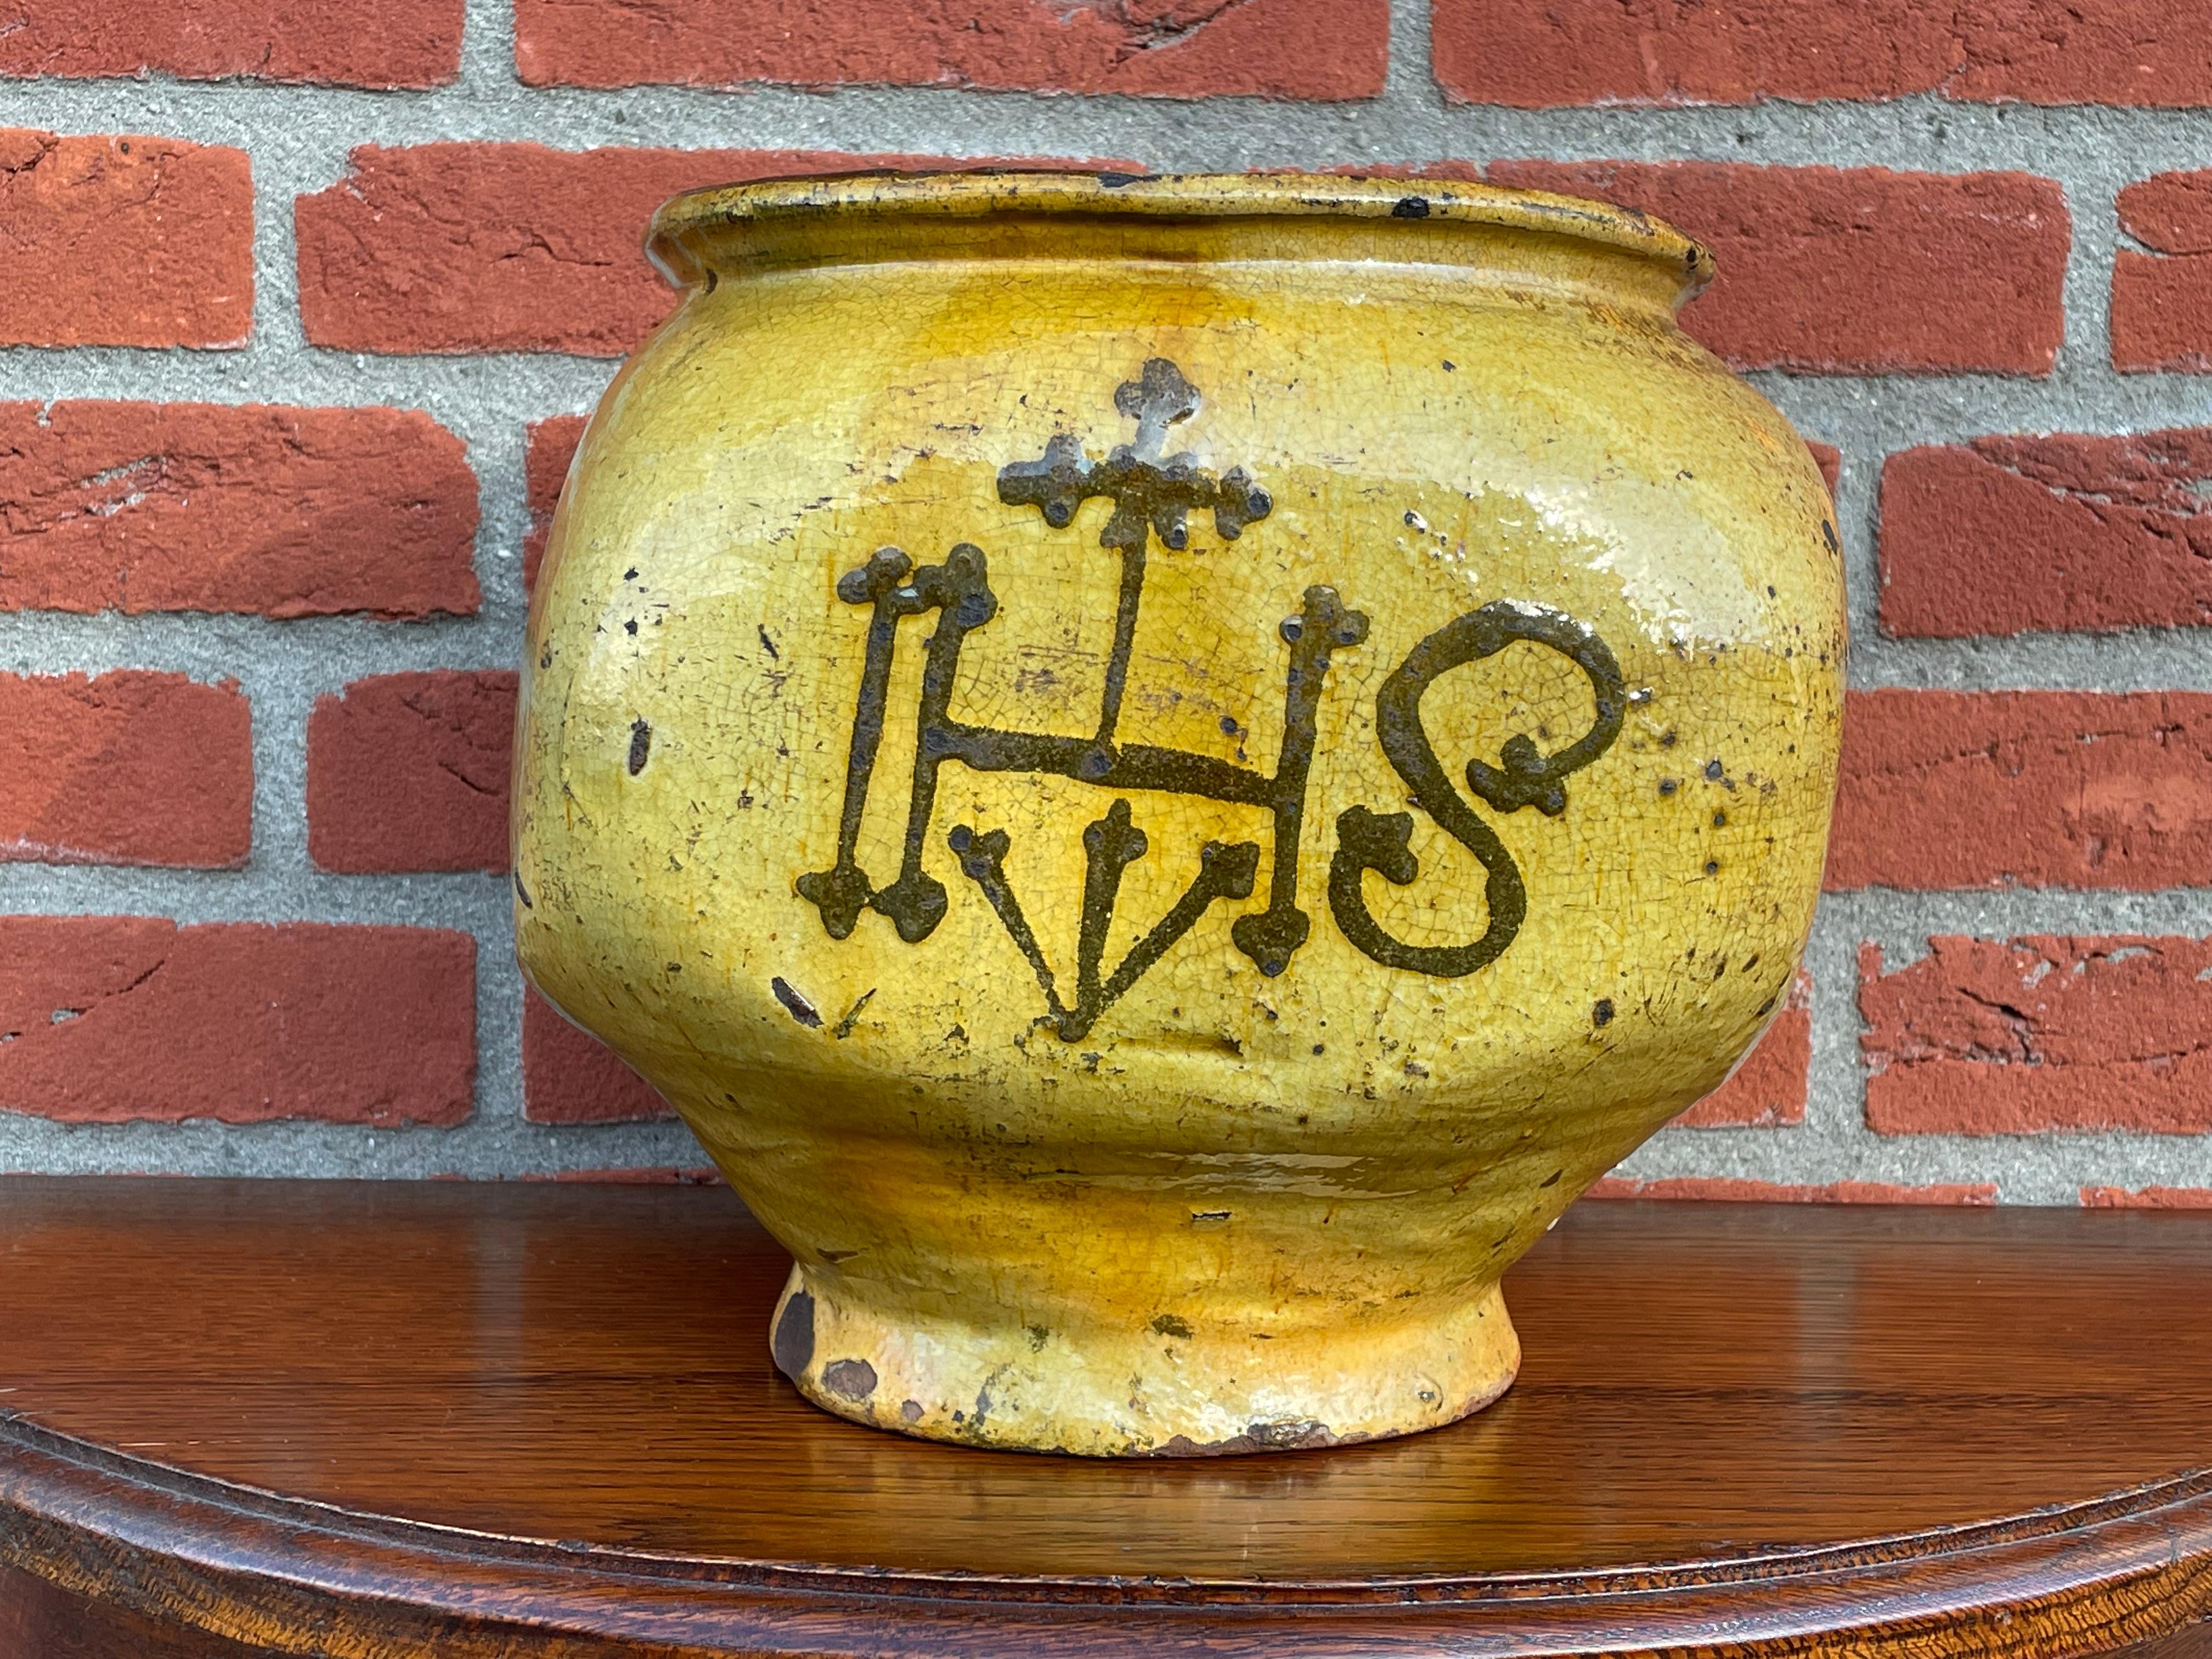 Pot émaillé unique avec un christogramme gothique rare et peint à la main. Probablement médiévale.

Au cours des dernières décennies, nous avons vu et vendu de nombreuses œuvres d'art religieux, mais nous n'avions encore jamais eu le plaisir de